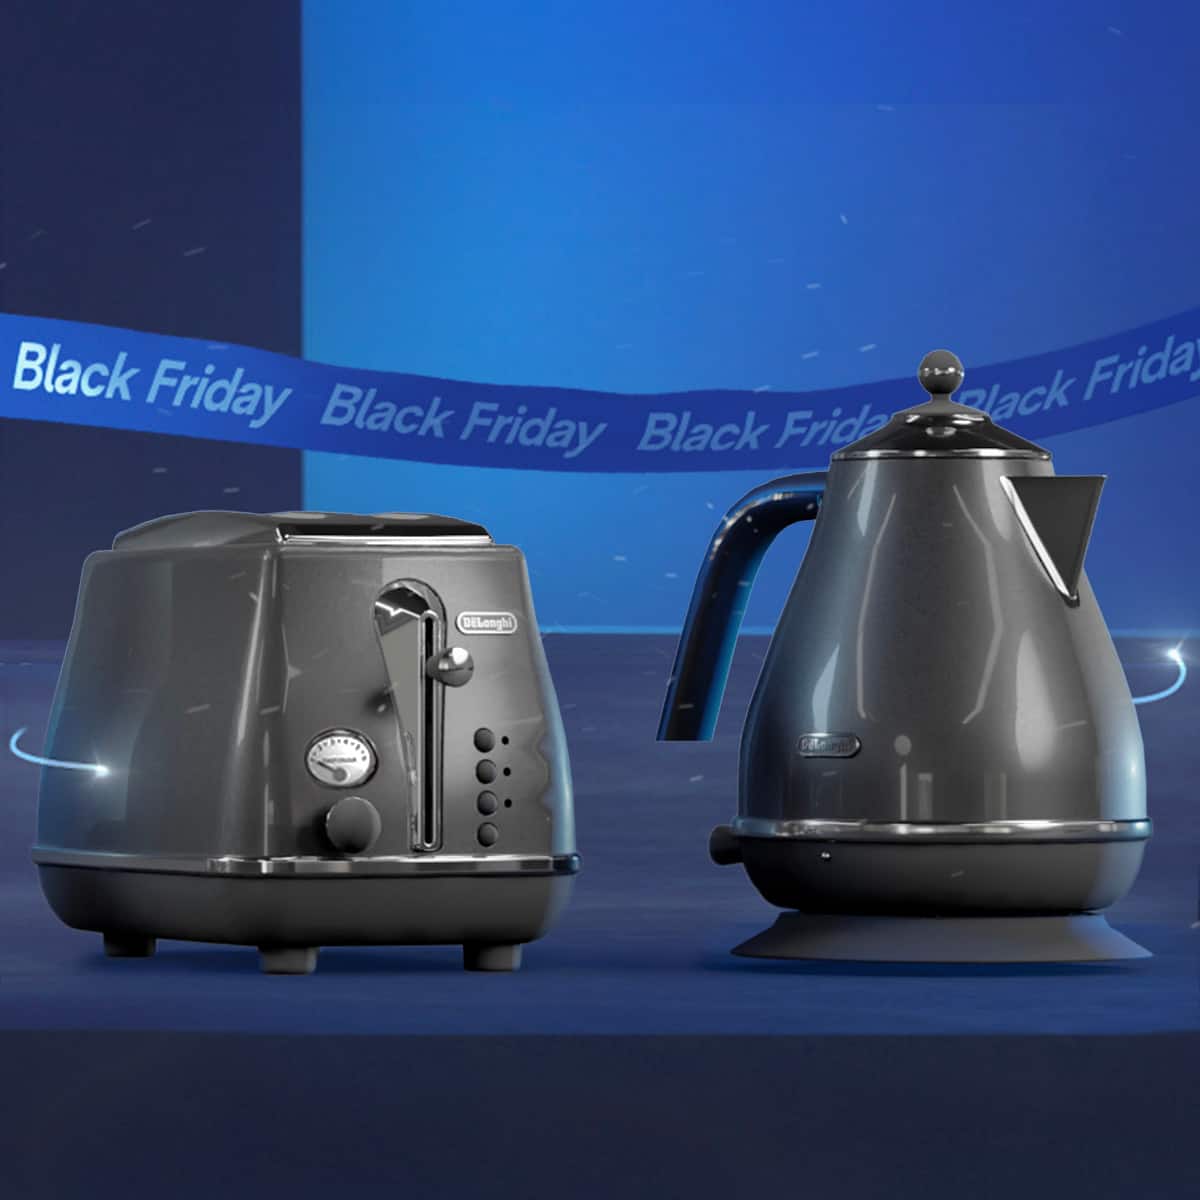 Black Friday : grosse baisse de prix pour cette machine à café